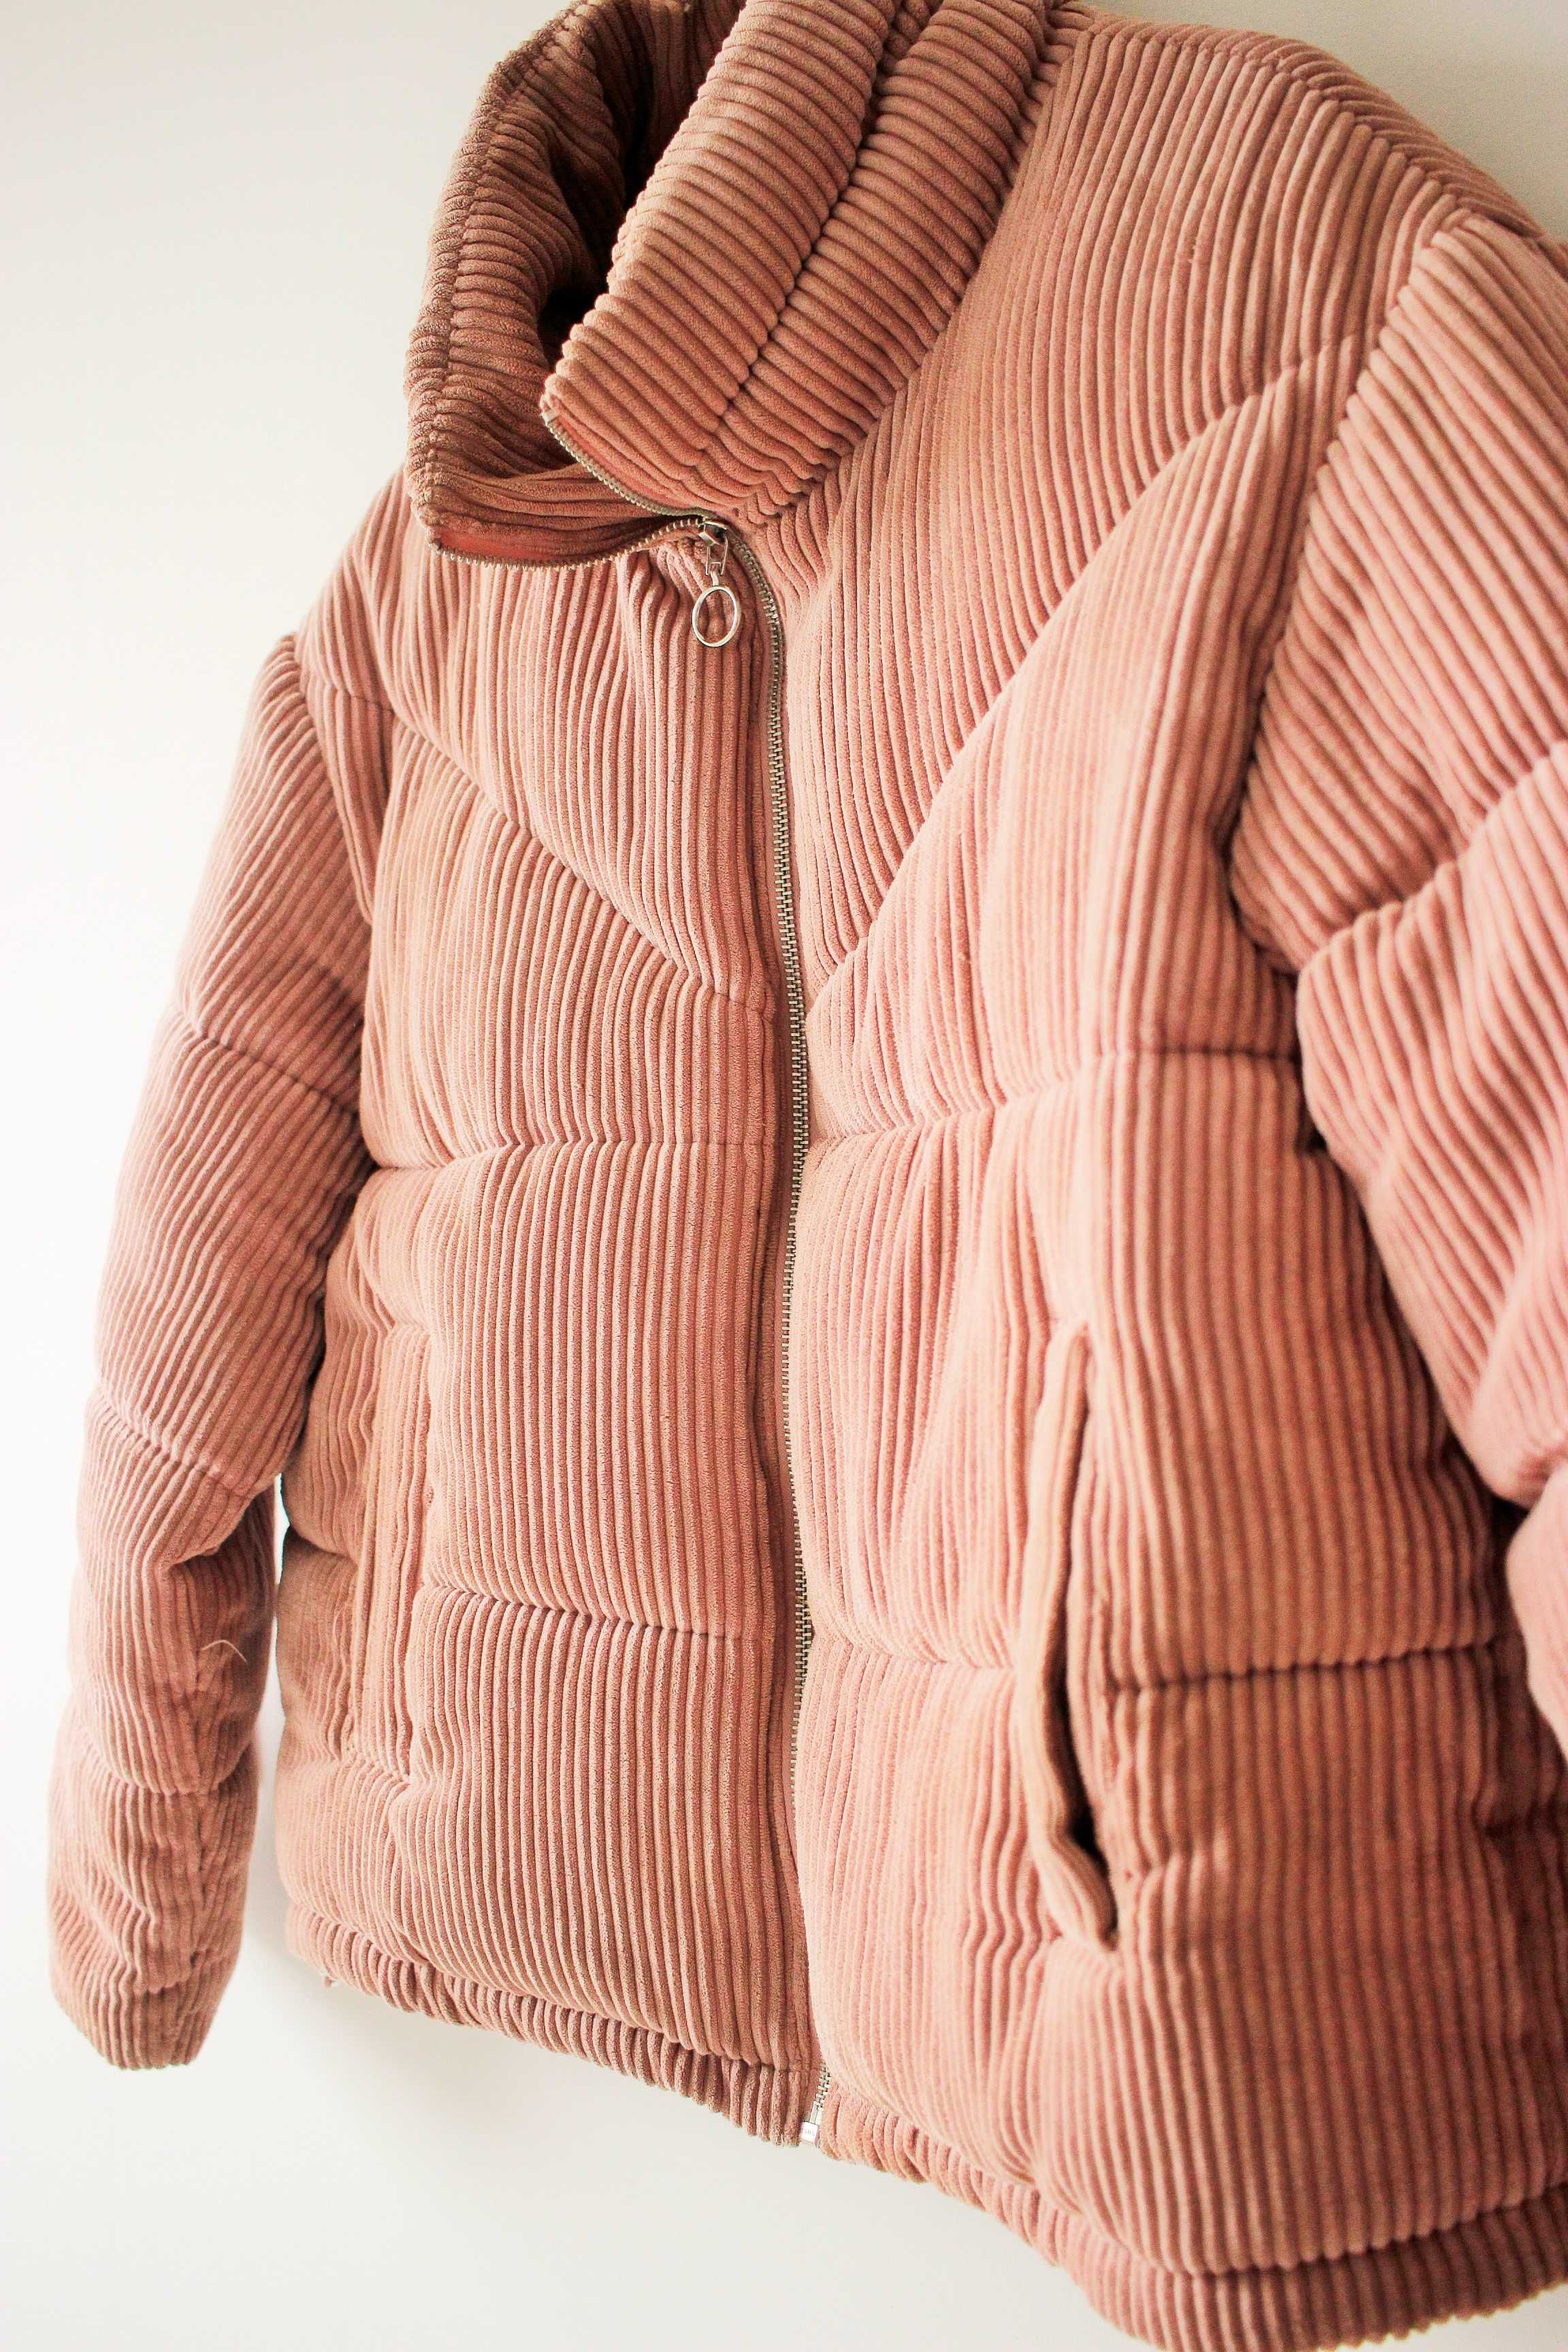 Ciepła kurtka sztruksowa, rozm.L/XL, różowa, wiosenna, bomber